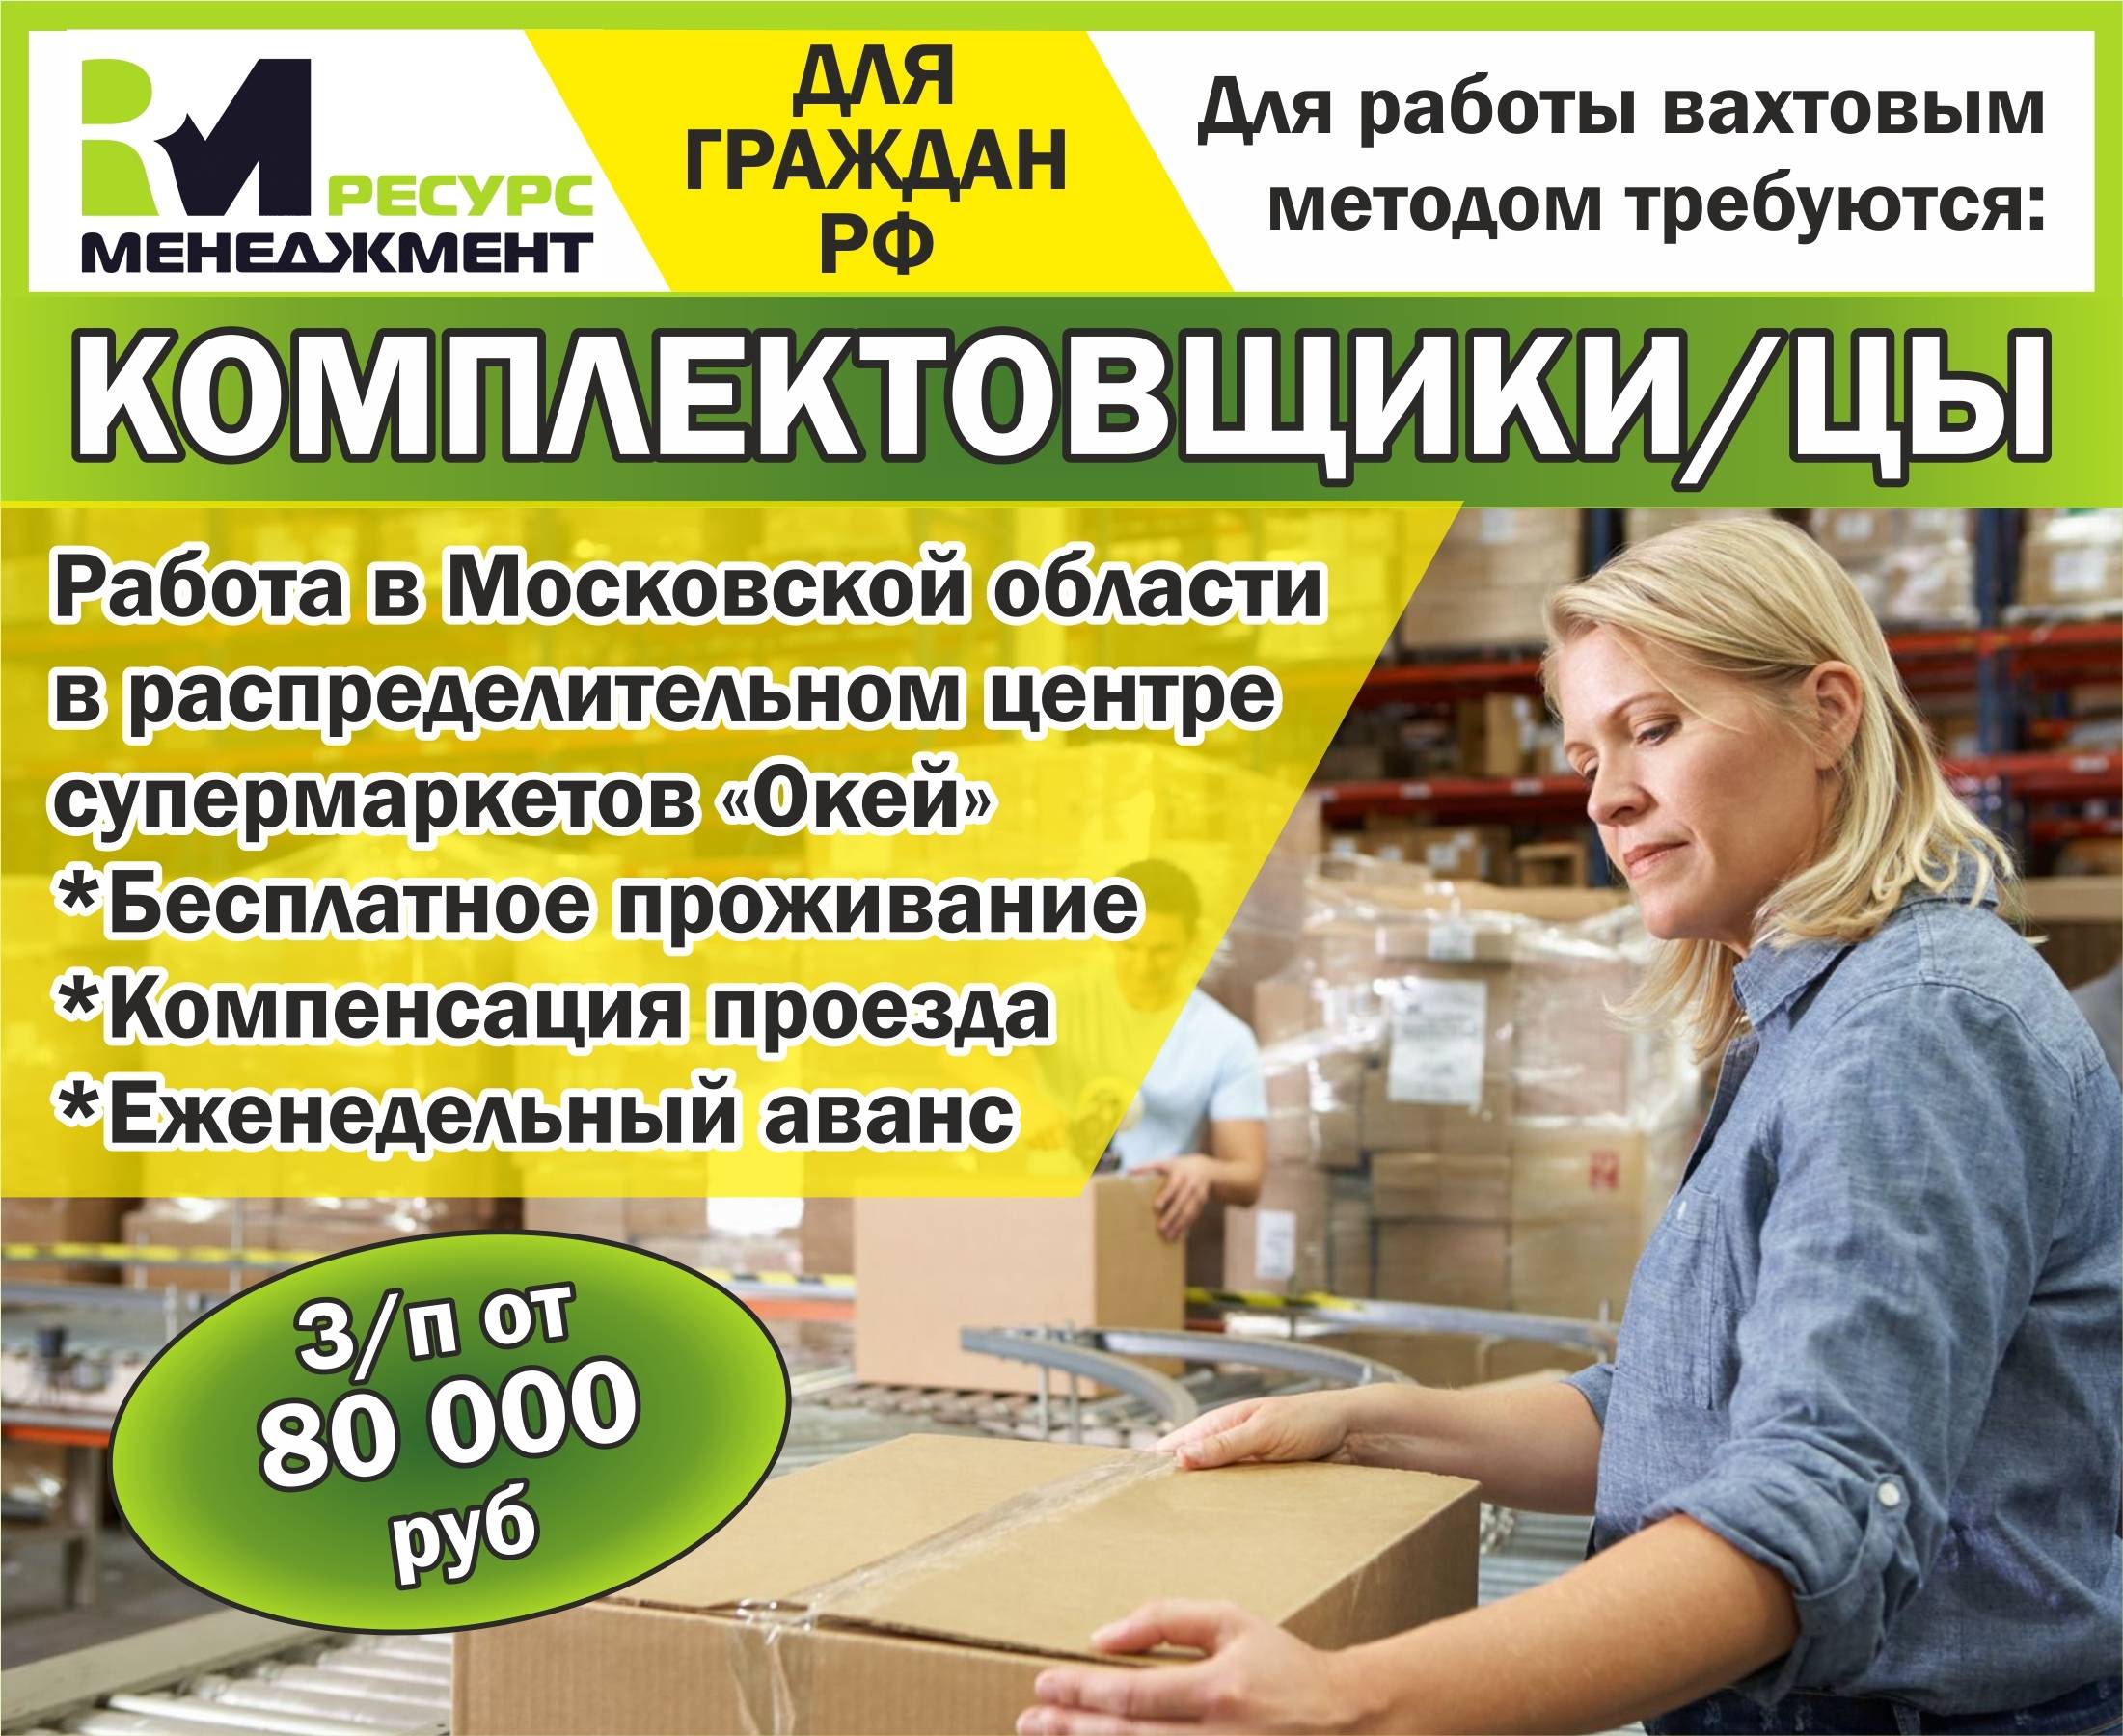 Как найти работу в италии для россиян, украинцев, вакансии — provizu.ru